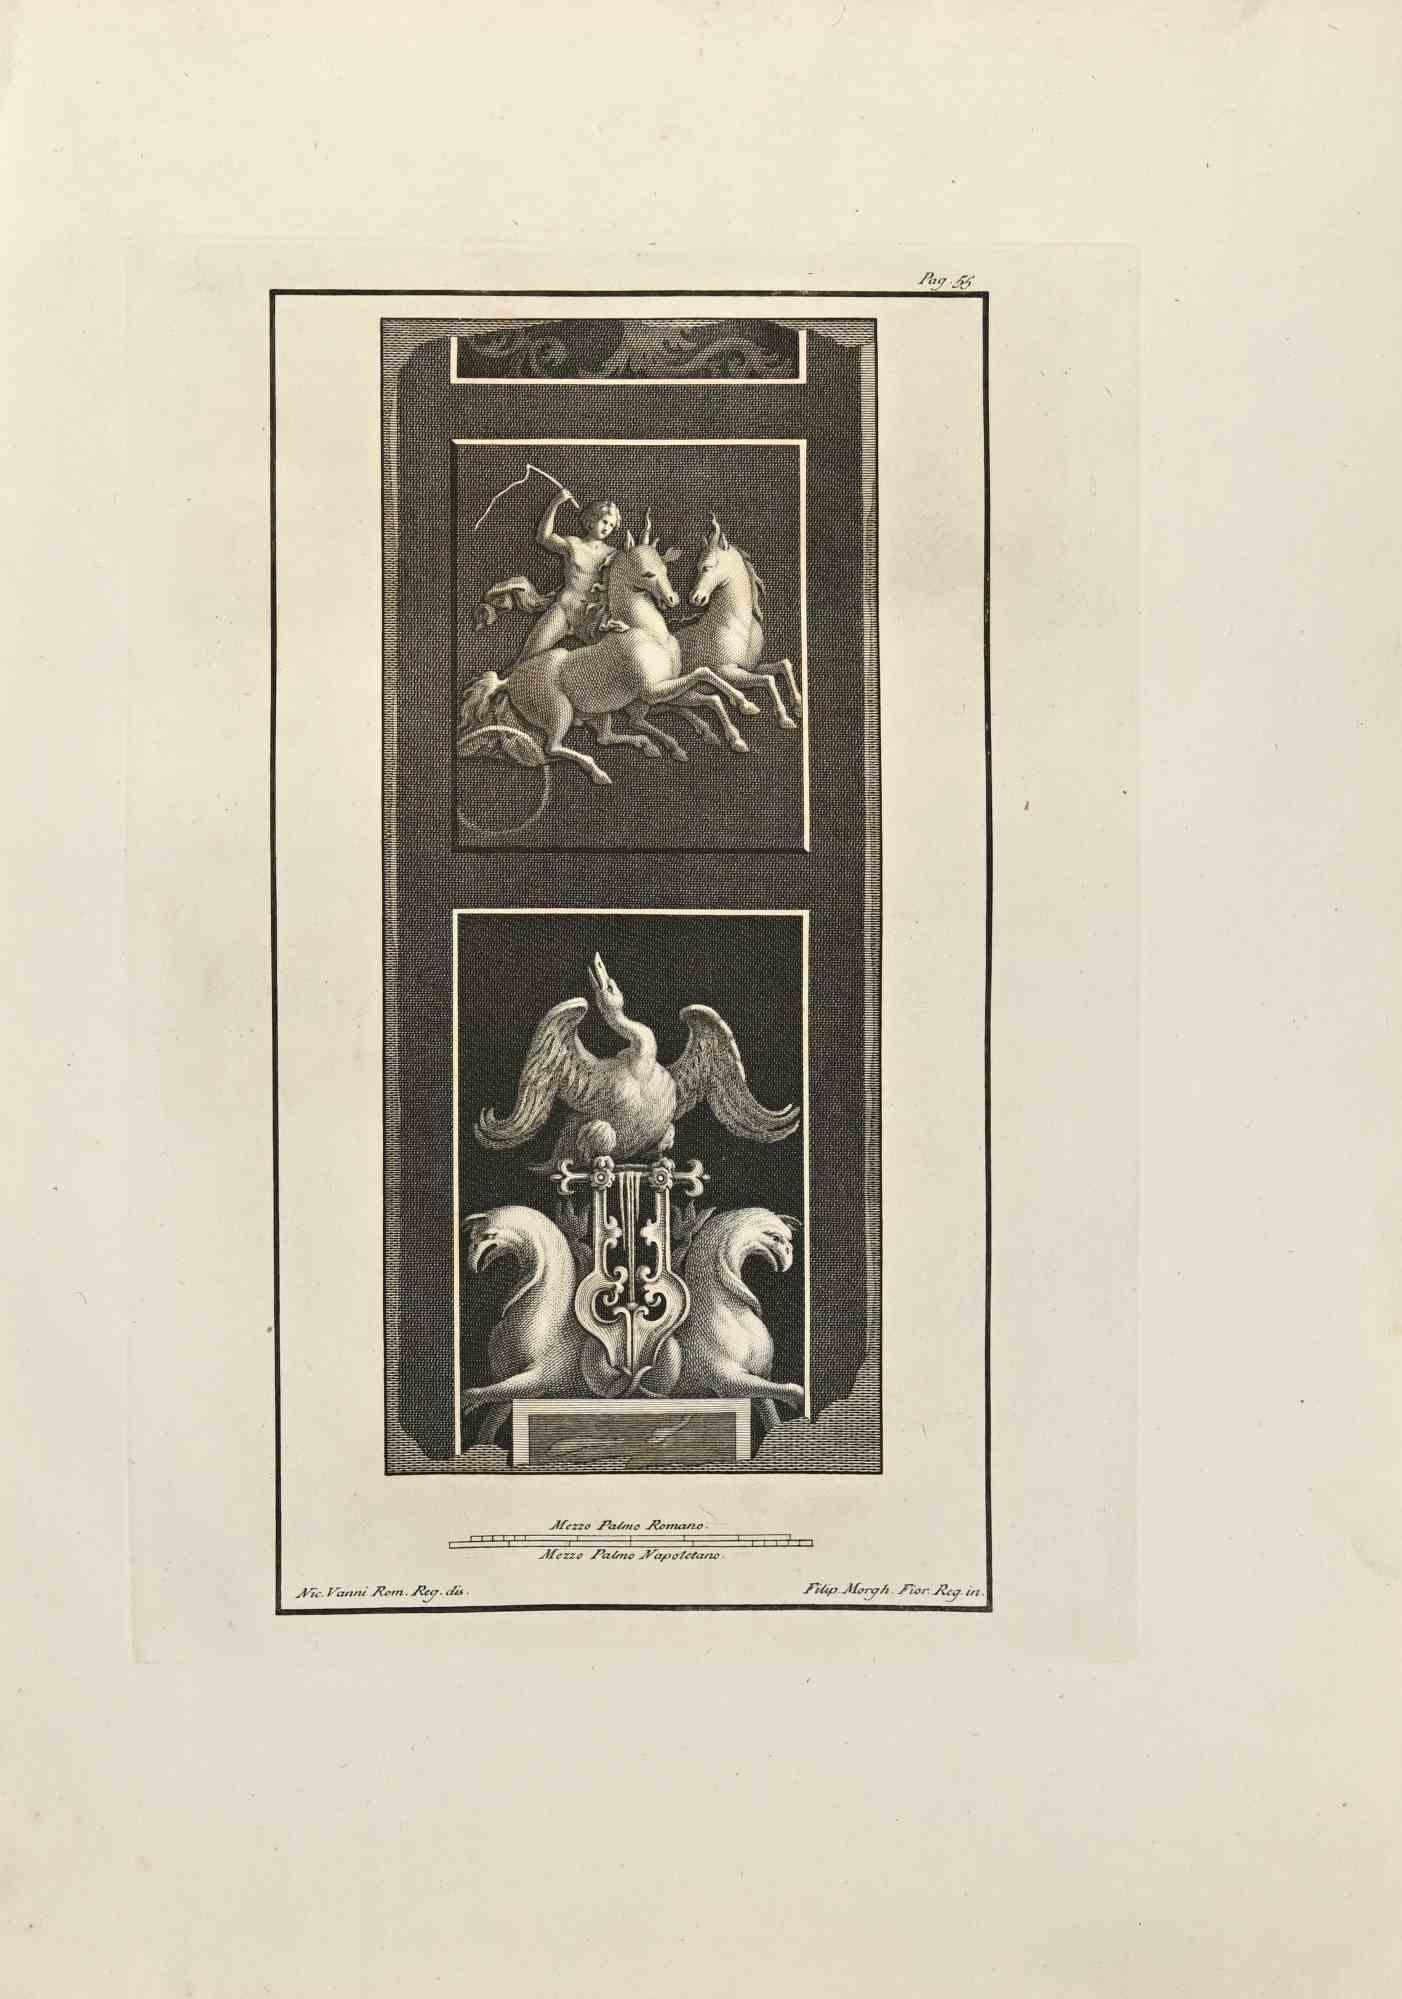 Hermès et Hippogriffe des "Antiquités d'Herculanum".  est une gravure sur papier réalisée par Filippo Morghen au 18ème siècle.

Signé sur la plaque.

Bonnes conditions avec quelques rousseurs et pliures dues à l'époque.

La gravure appartient à la